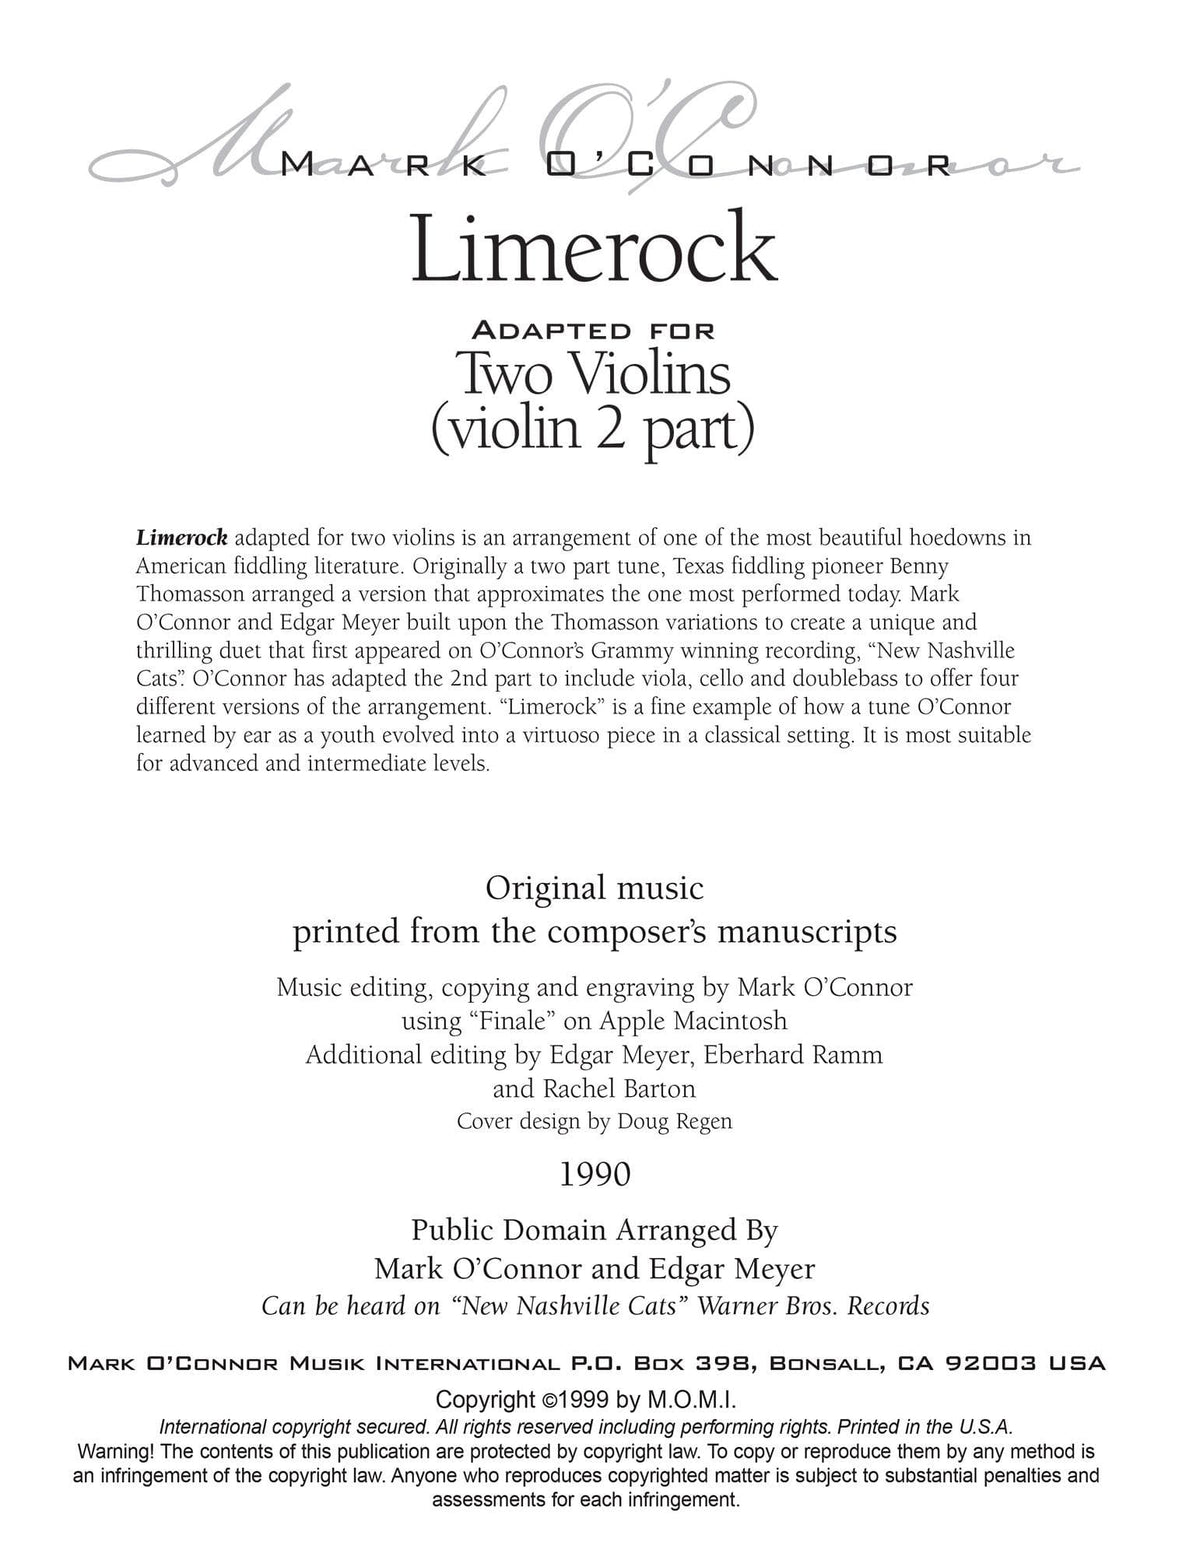 O'Connor, Mark - Limerock for 2 Violins - Violin 2 - Digital Download